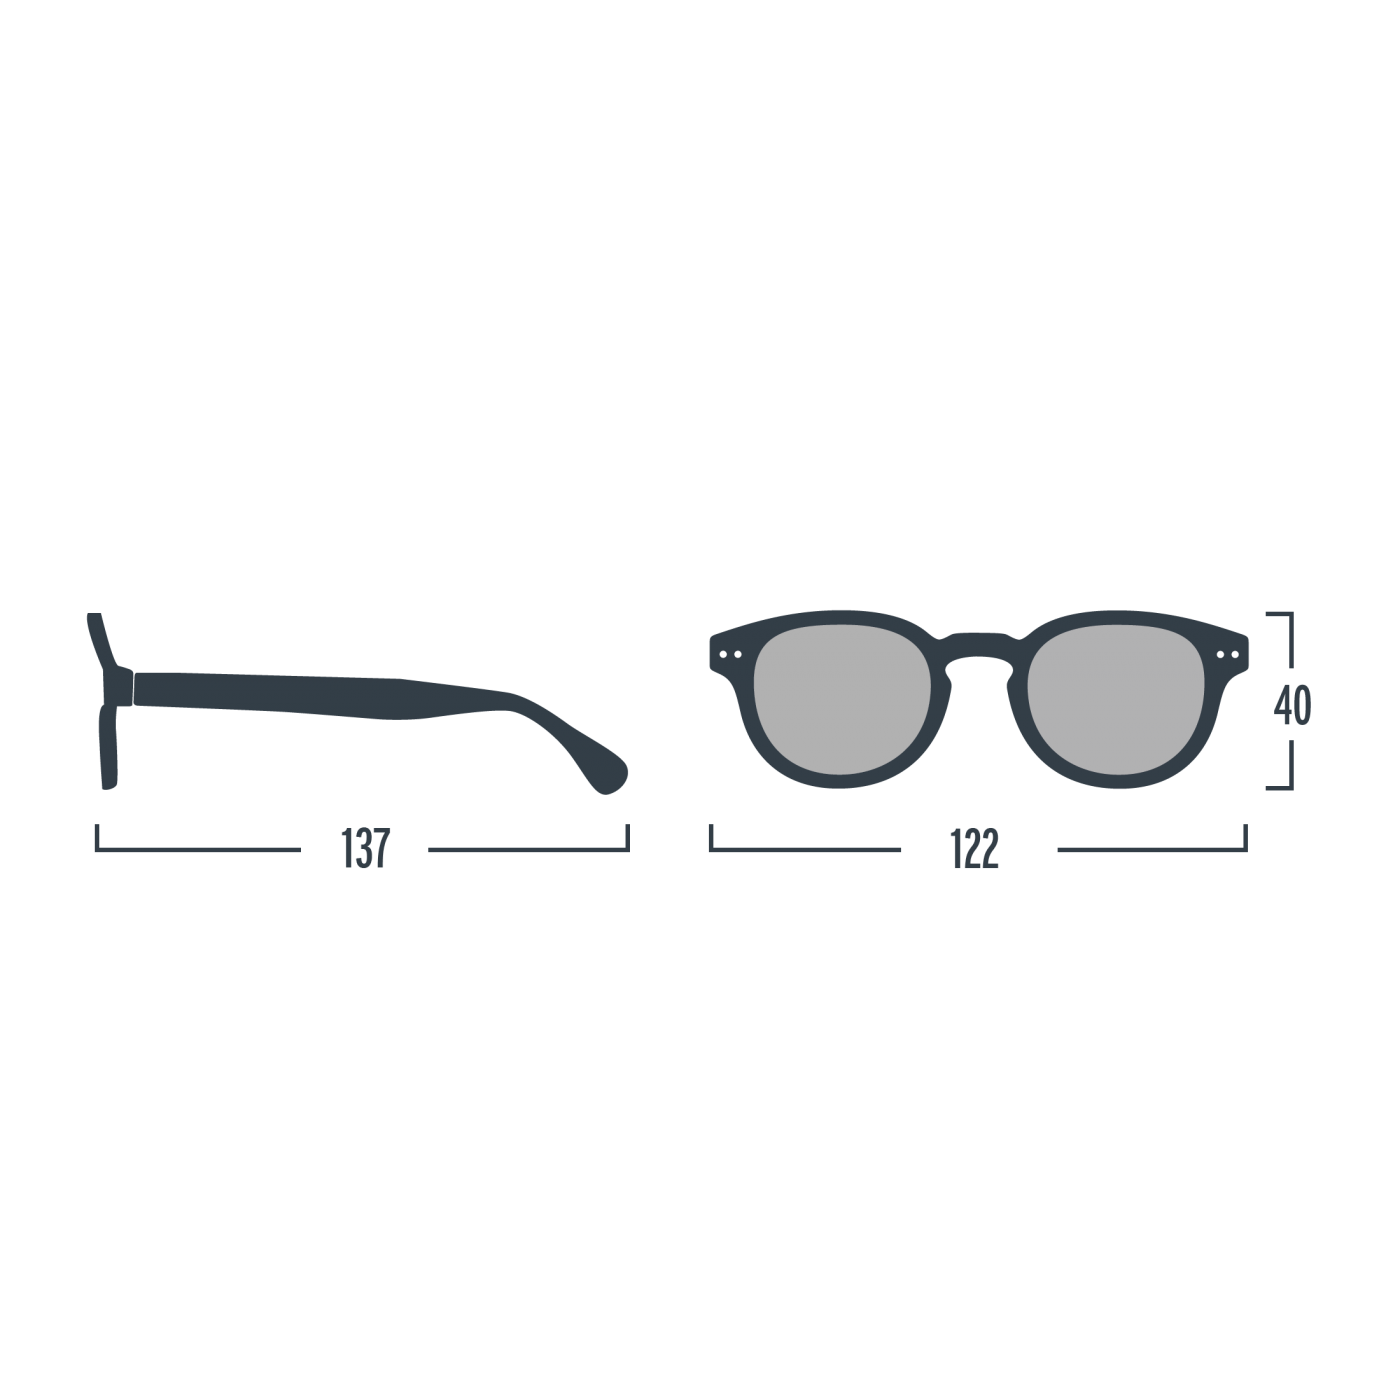 Óculos de Sol encarnados #D para crianças dos 5 aos 10 anos